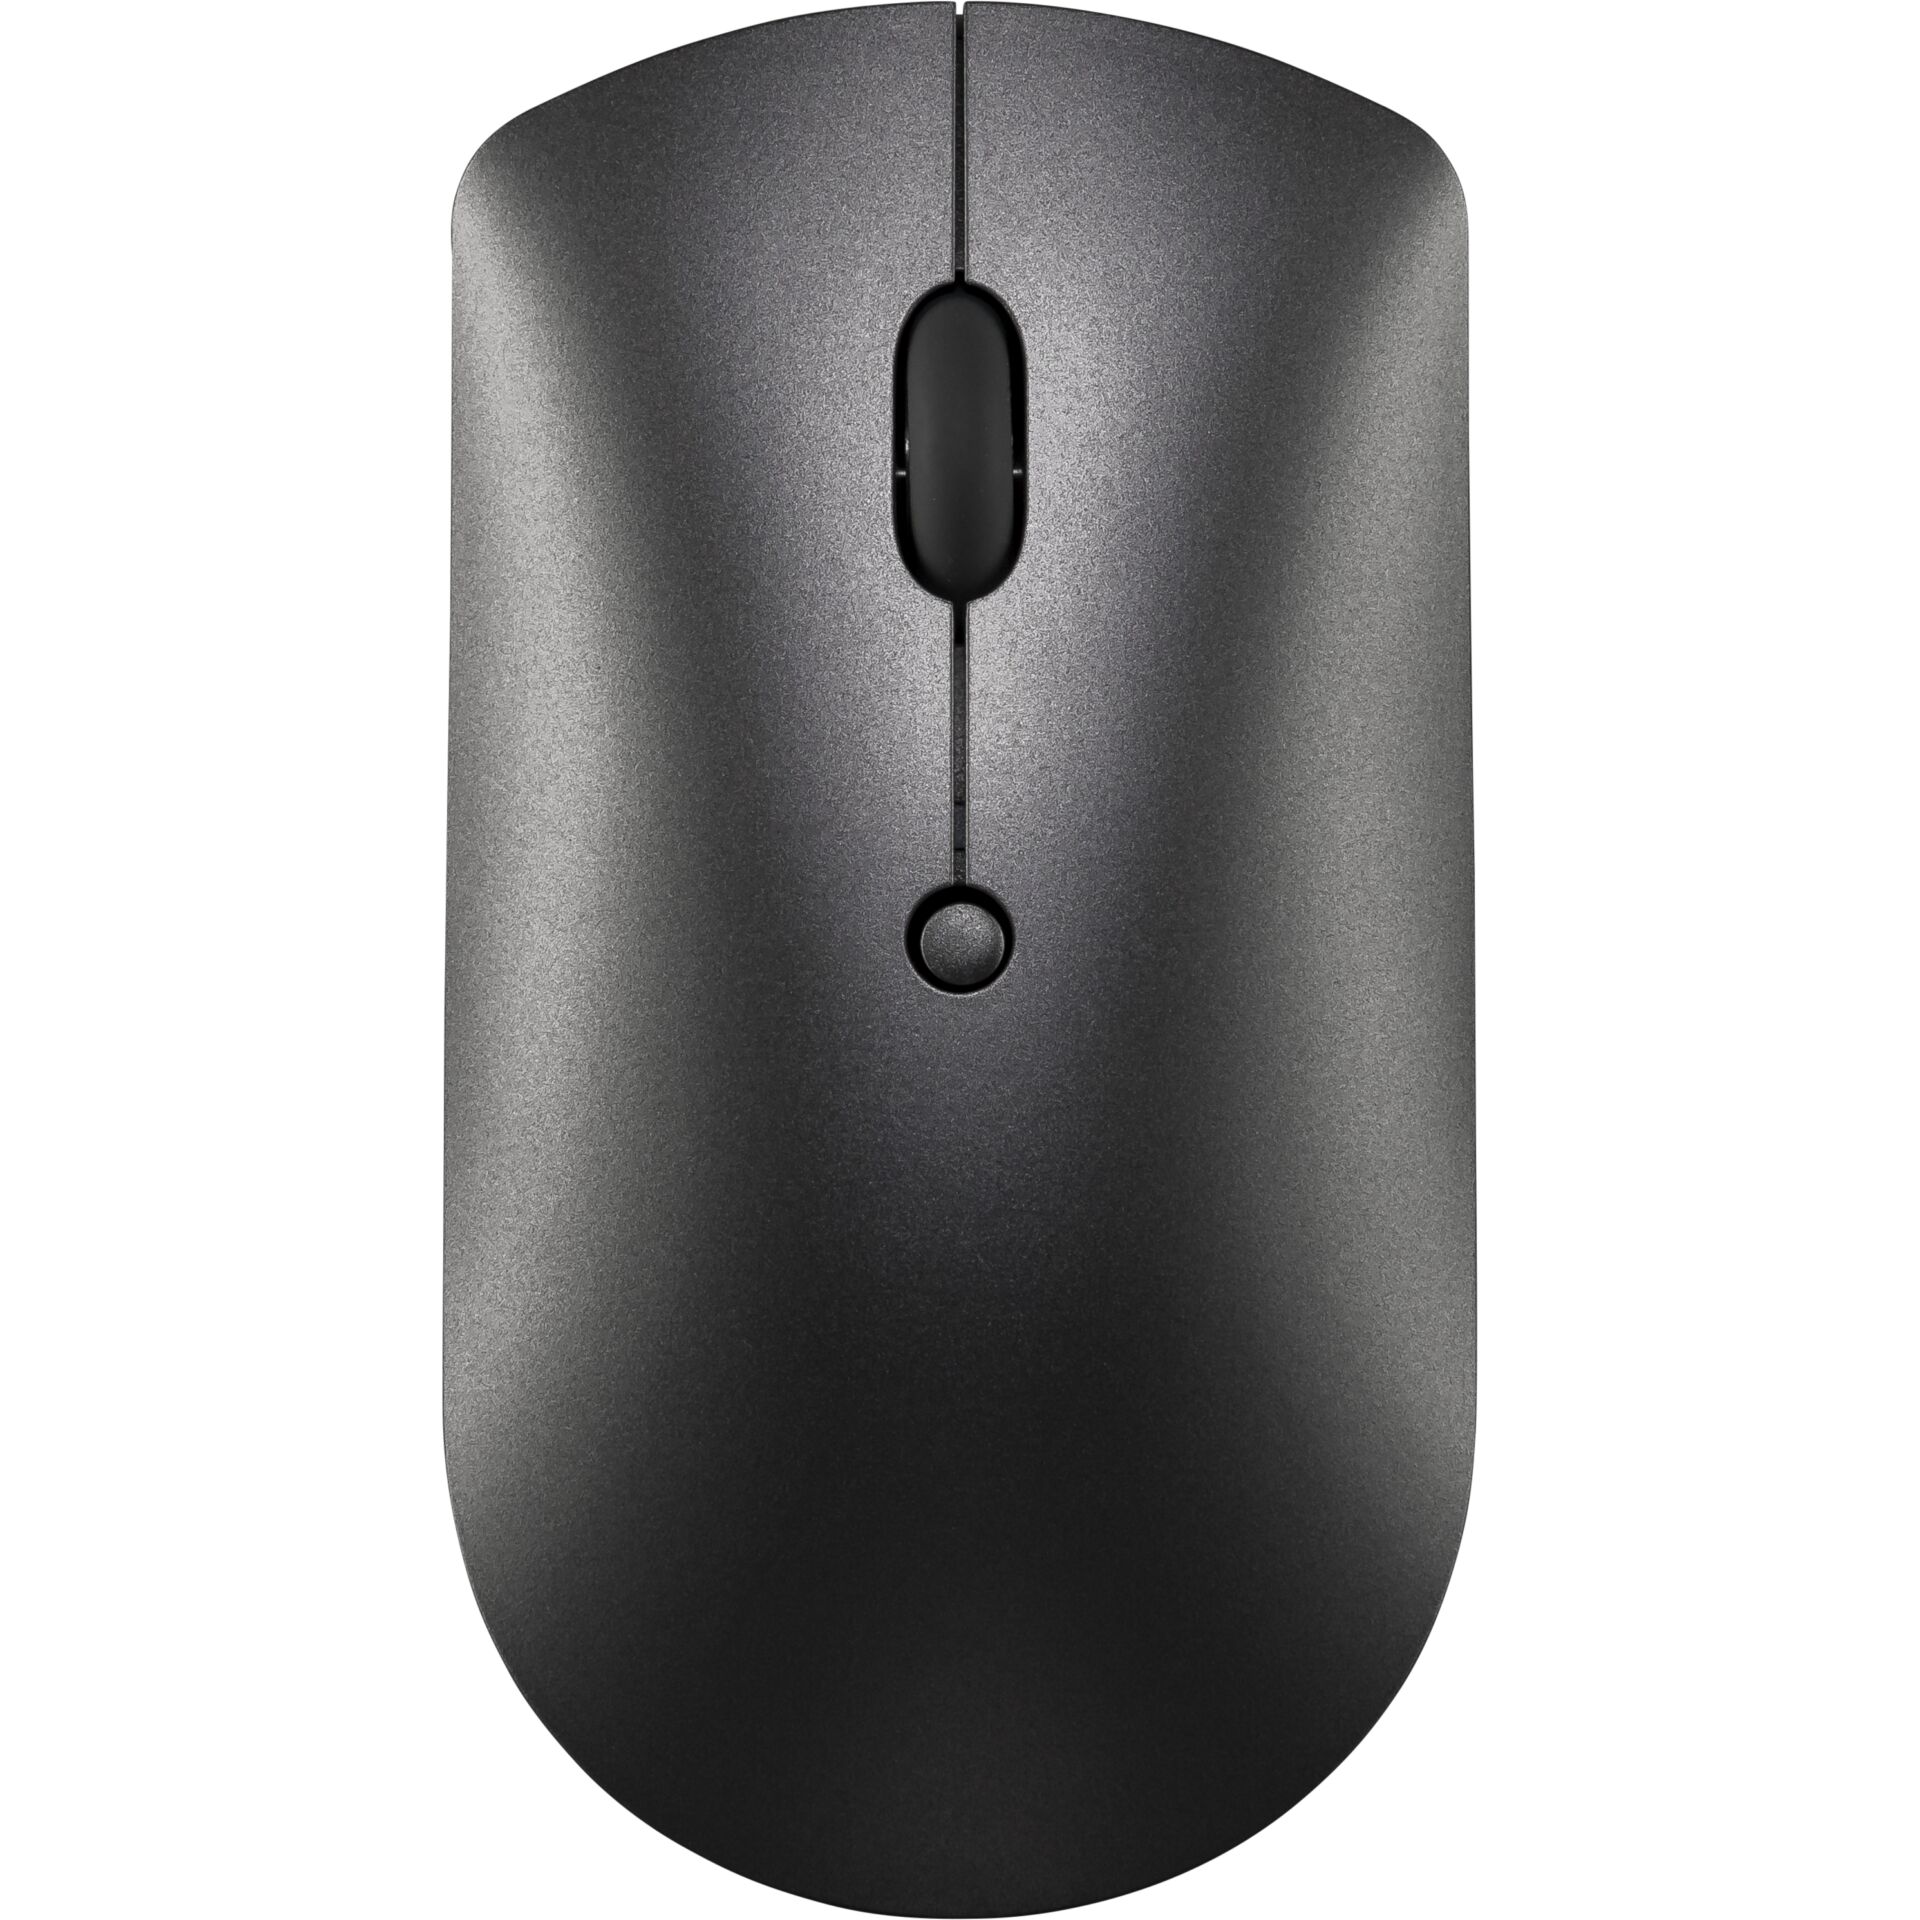 Lenovo 600 Wireless Mouse iron grey